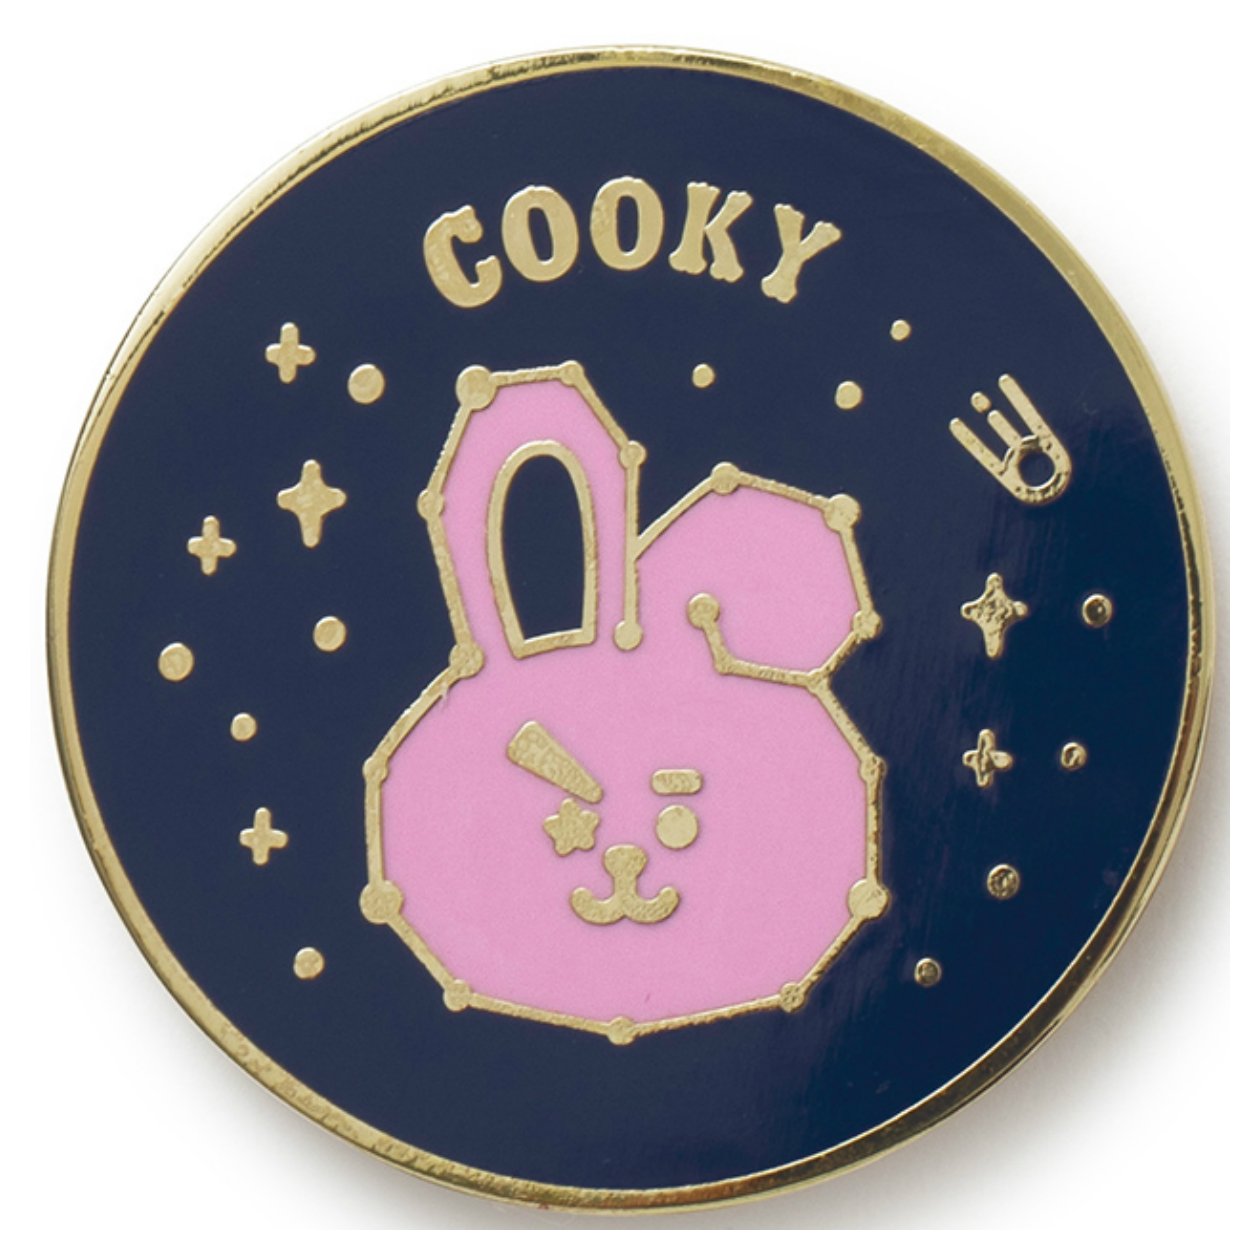 BT21 COOKY Universtar Metal Badge 2